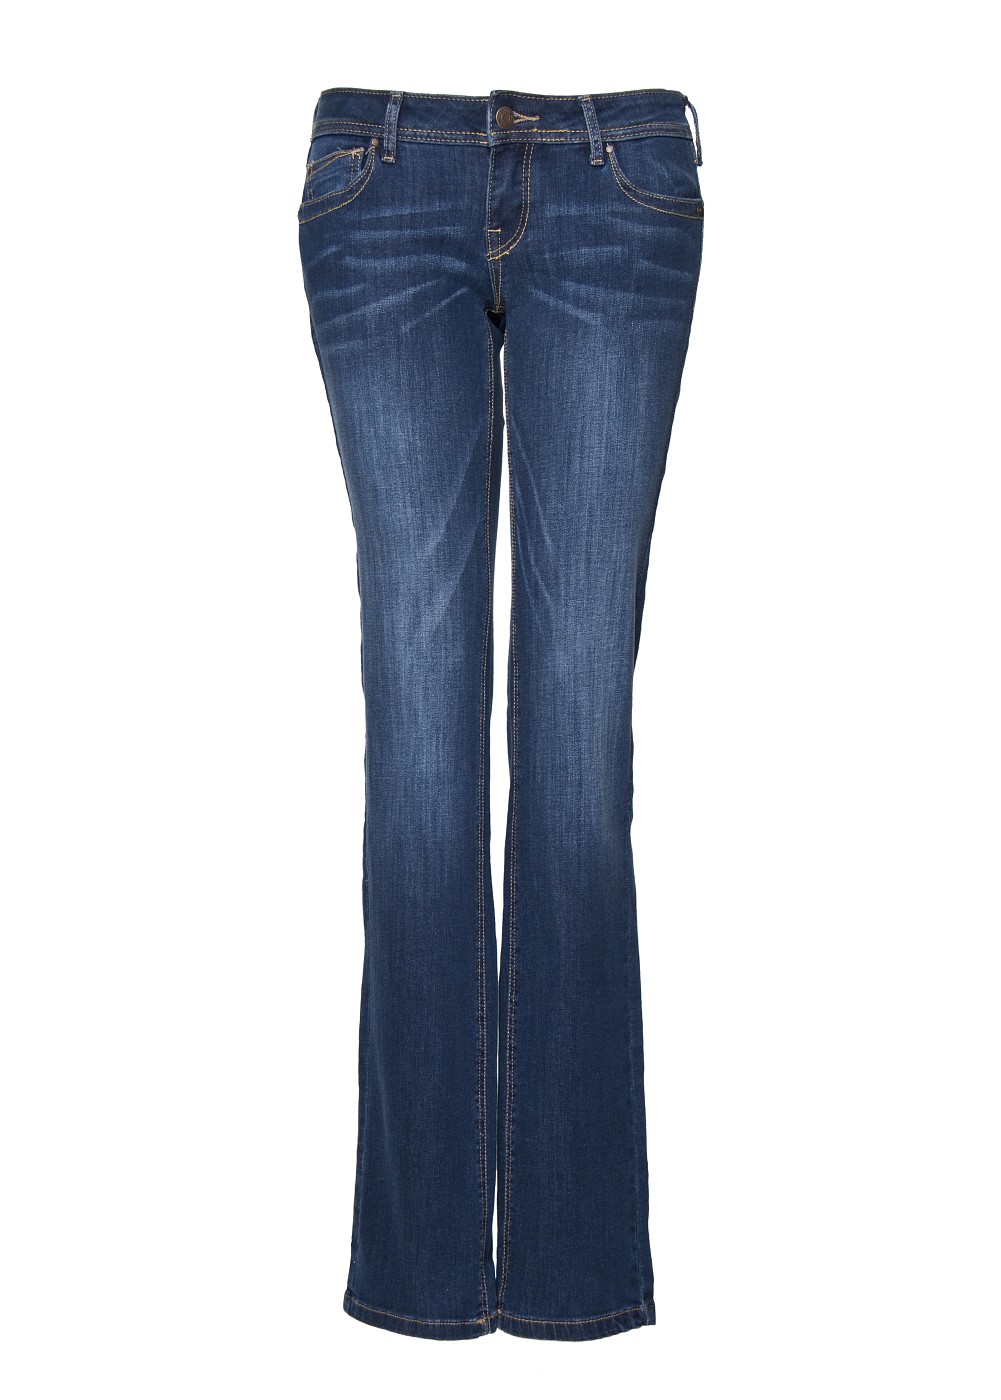 Lyst - Mango Jeans Christy6 in Blue